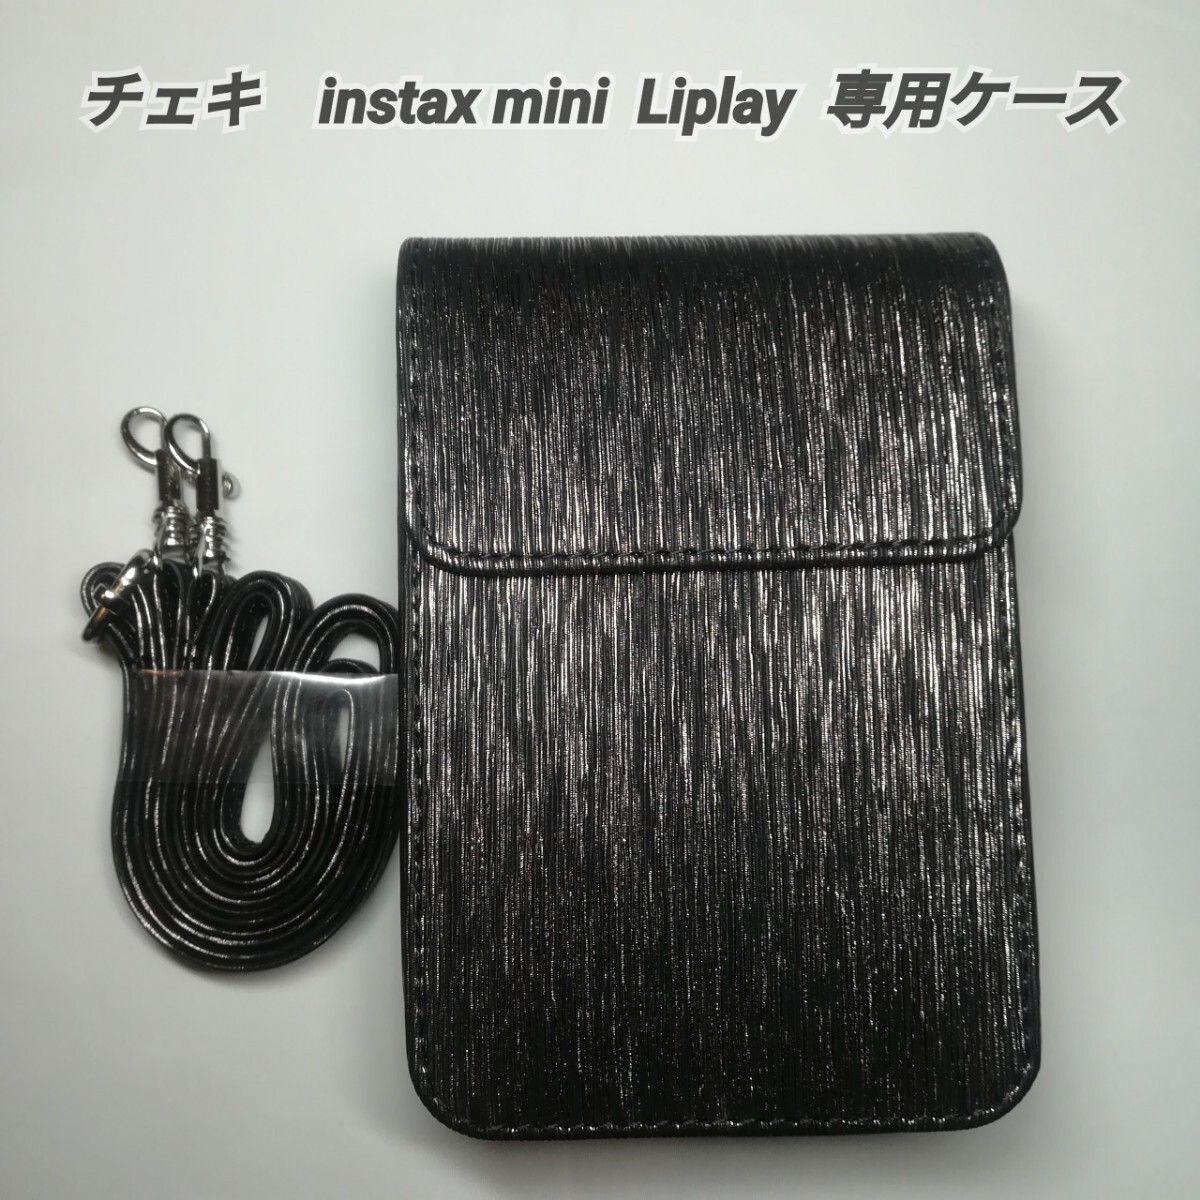 チェキ instax mini Liplay 専用ケース 黒の画像1